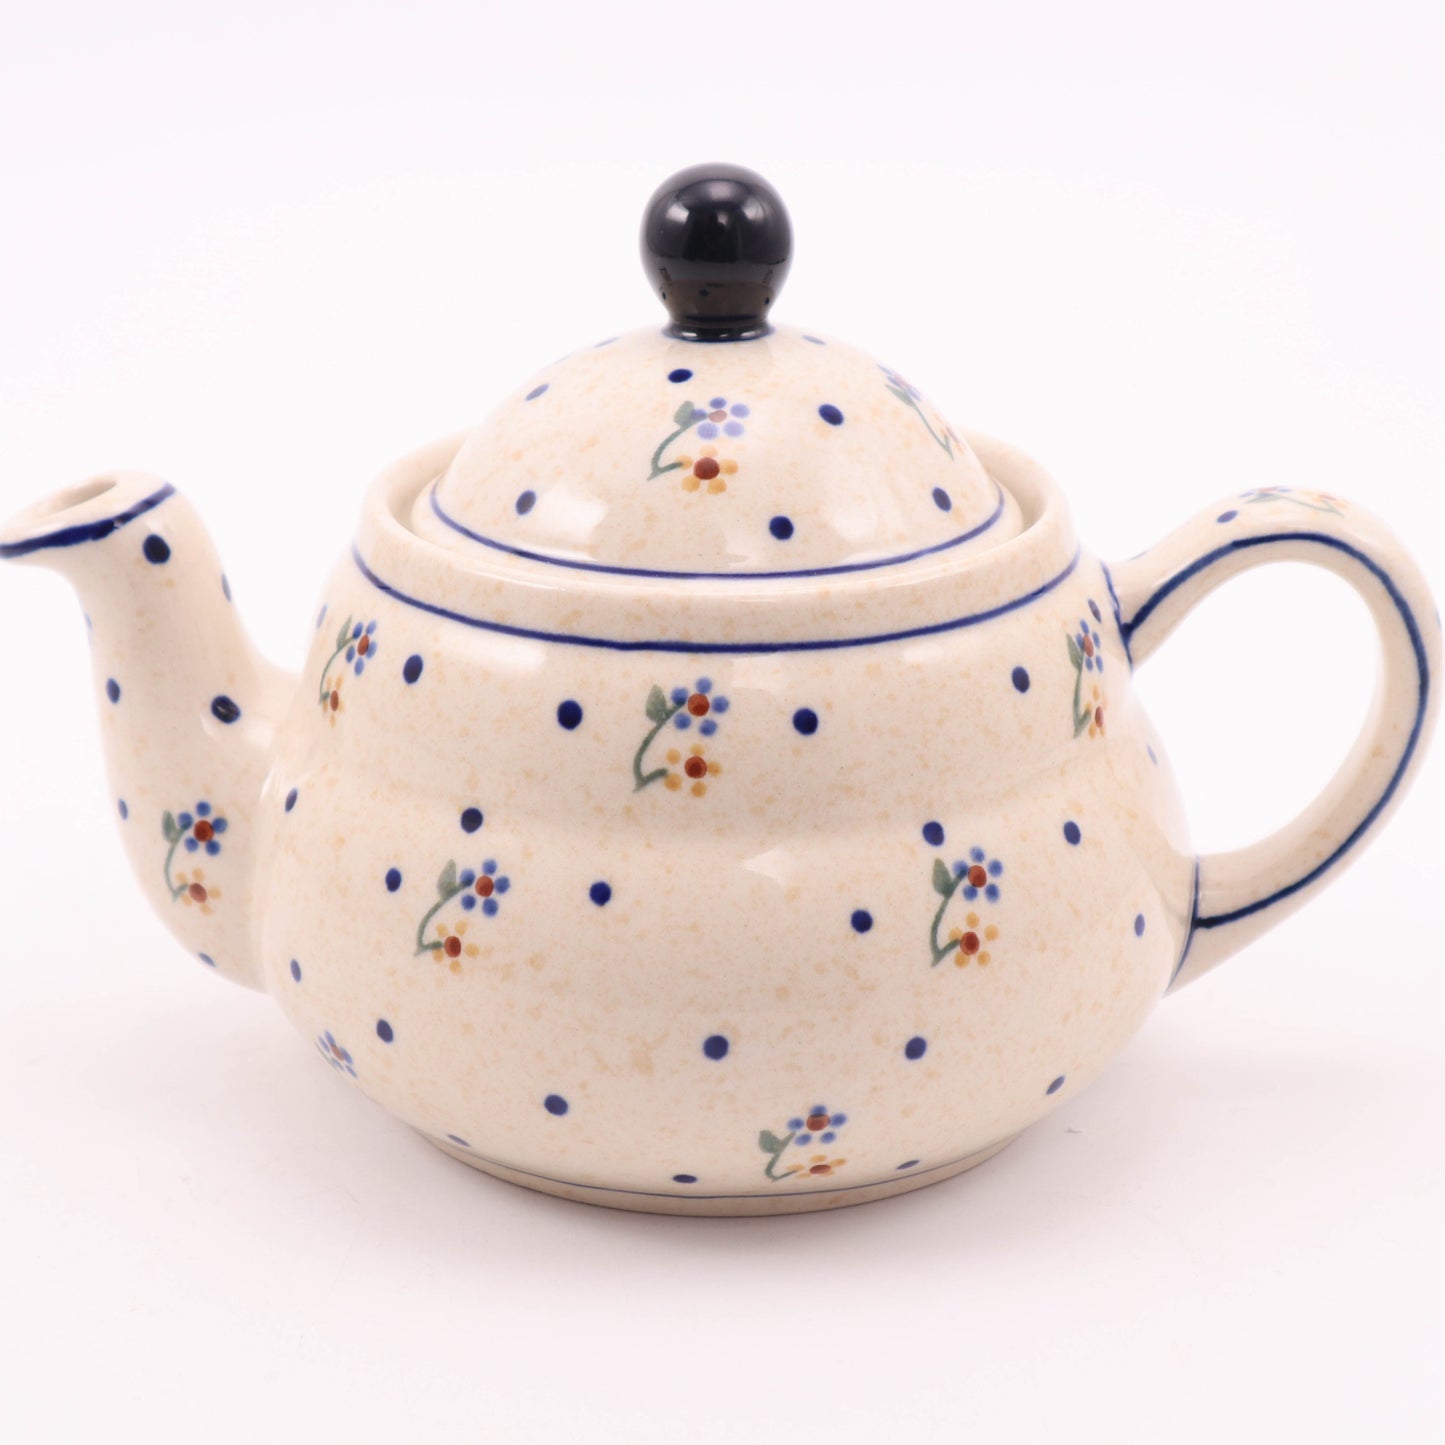 20oz Stout Teapot. Pattern: Sabala